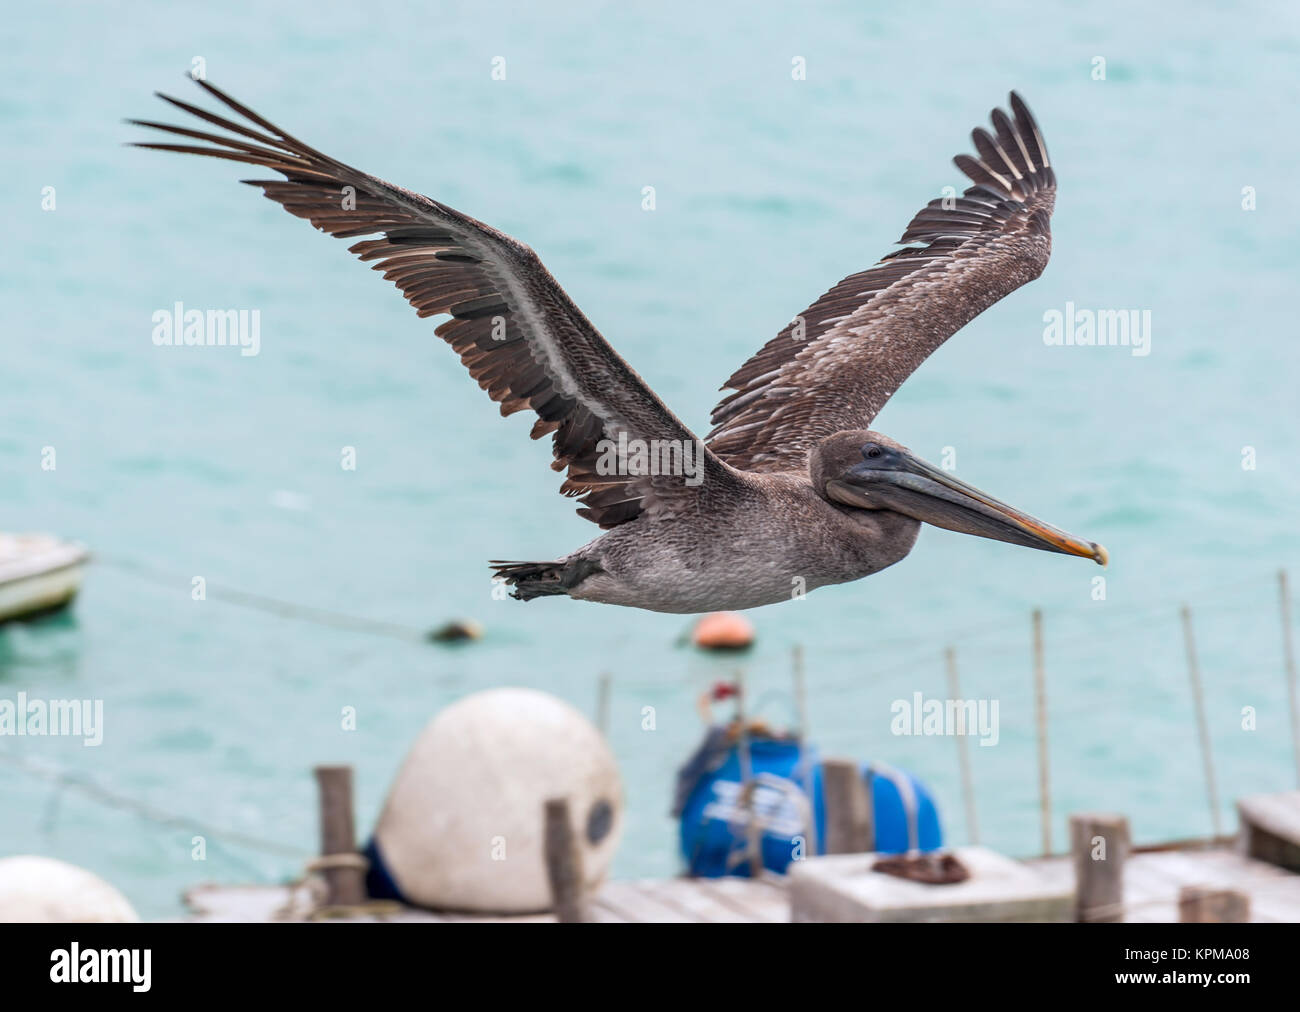 Pelican in flight Stock Photo